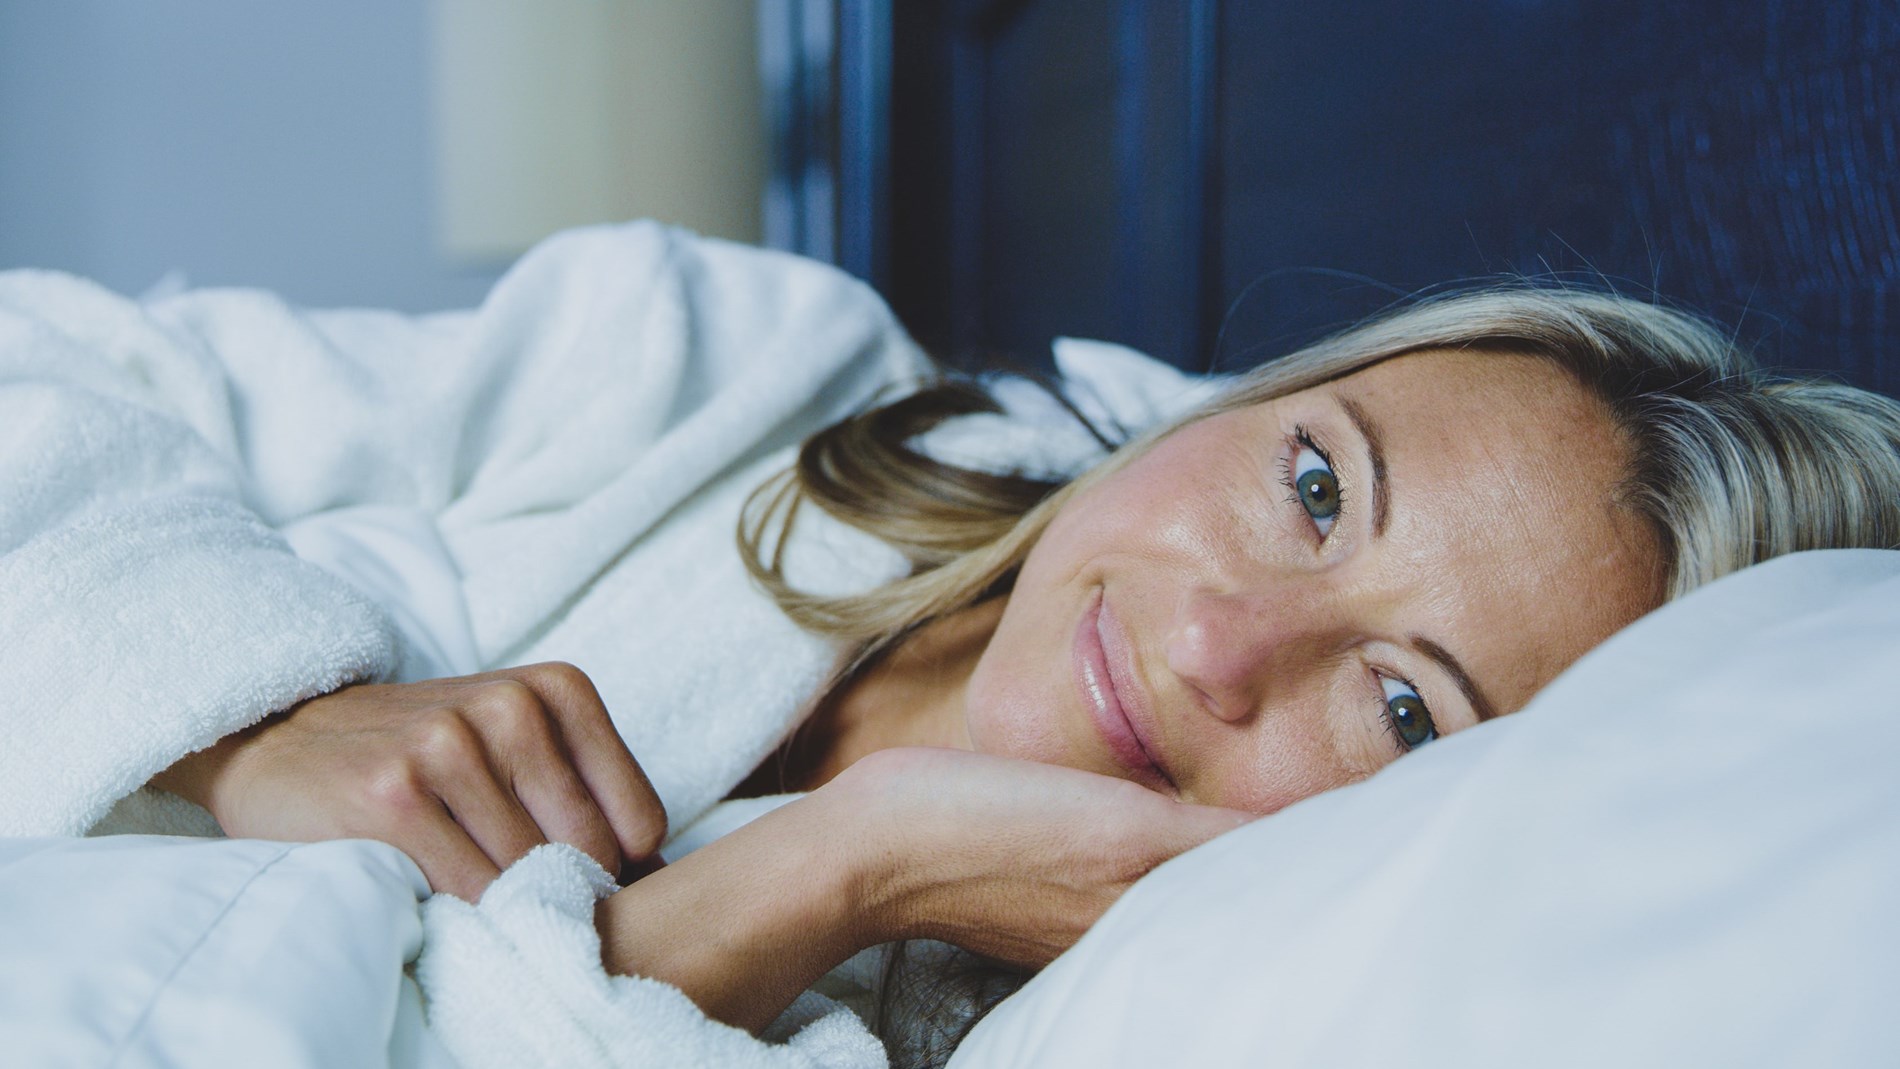 لا تسبب التعب! ما هي “متلازمة النوم القصير” التي قد تدفع الشخص للاكتفاء بـ5 ساعات من النوم؟(زهرة الخليج)